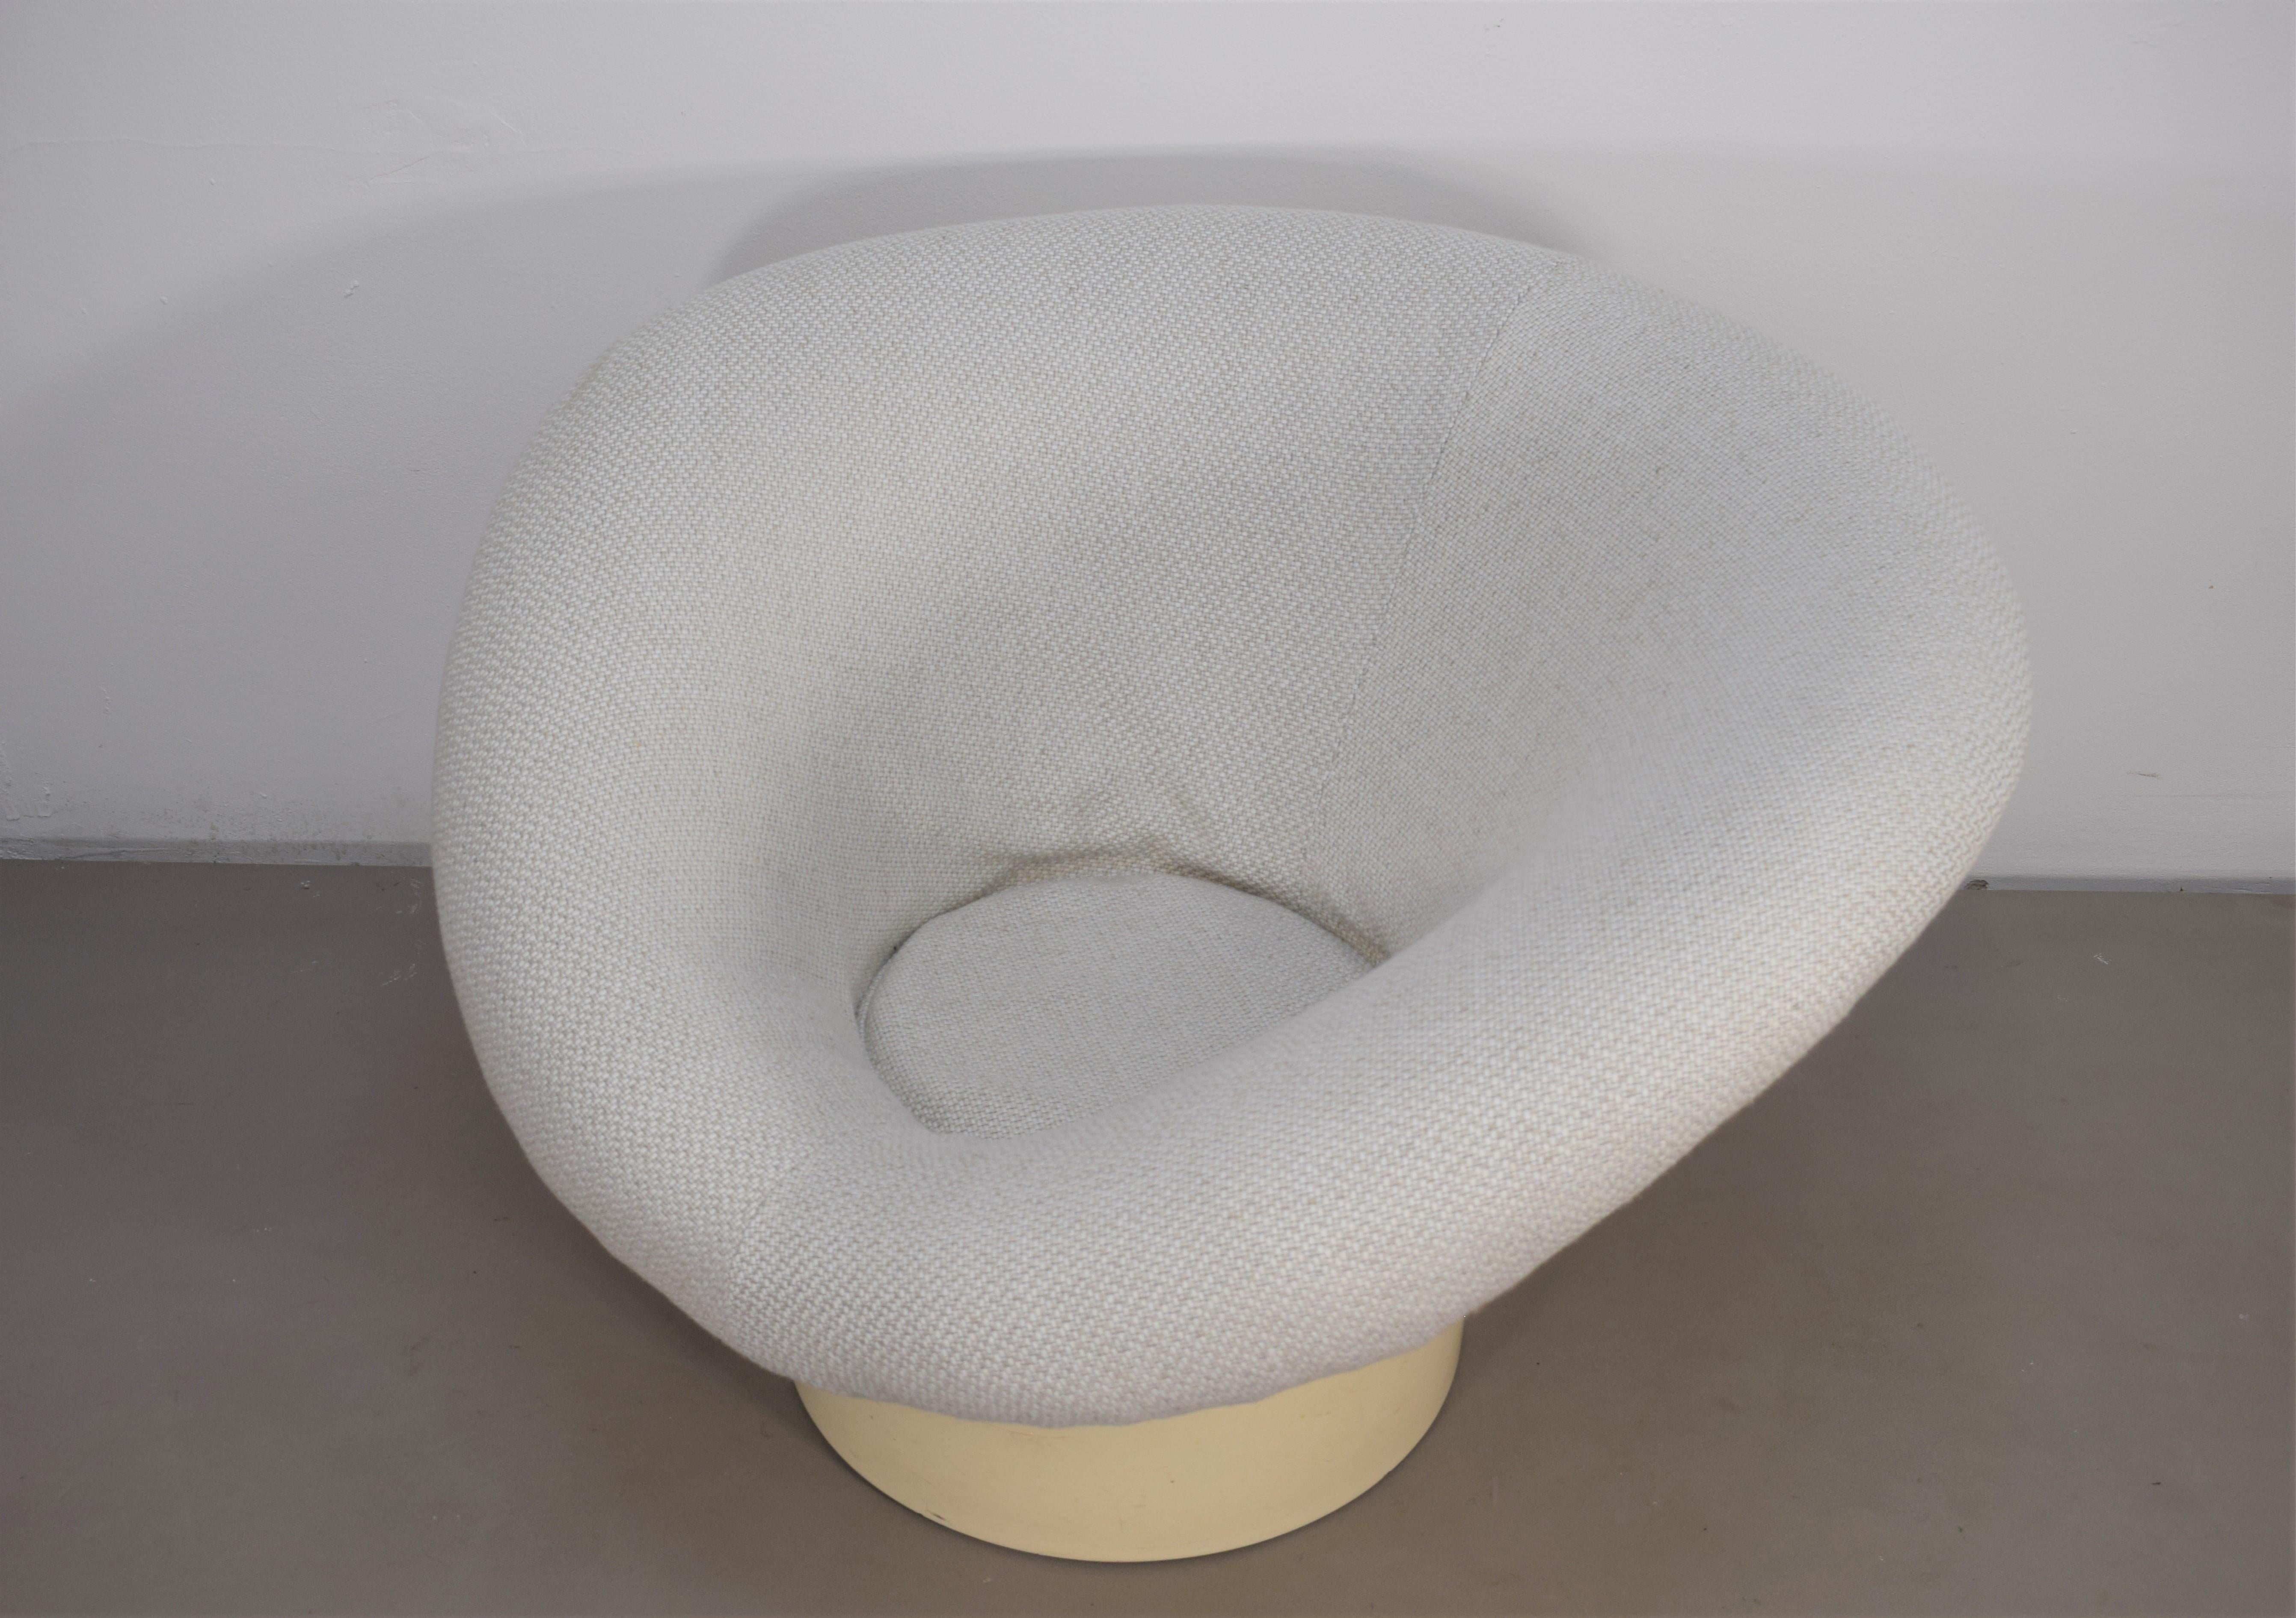 Korkus armchair by Lennart Bender, 1960s.

Dimensions: H= 60 cm; W= 92 cm; D= 82 cm; H seat= 30 cm.